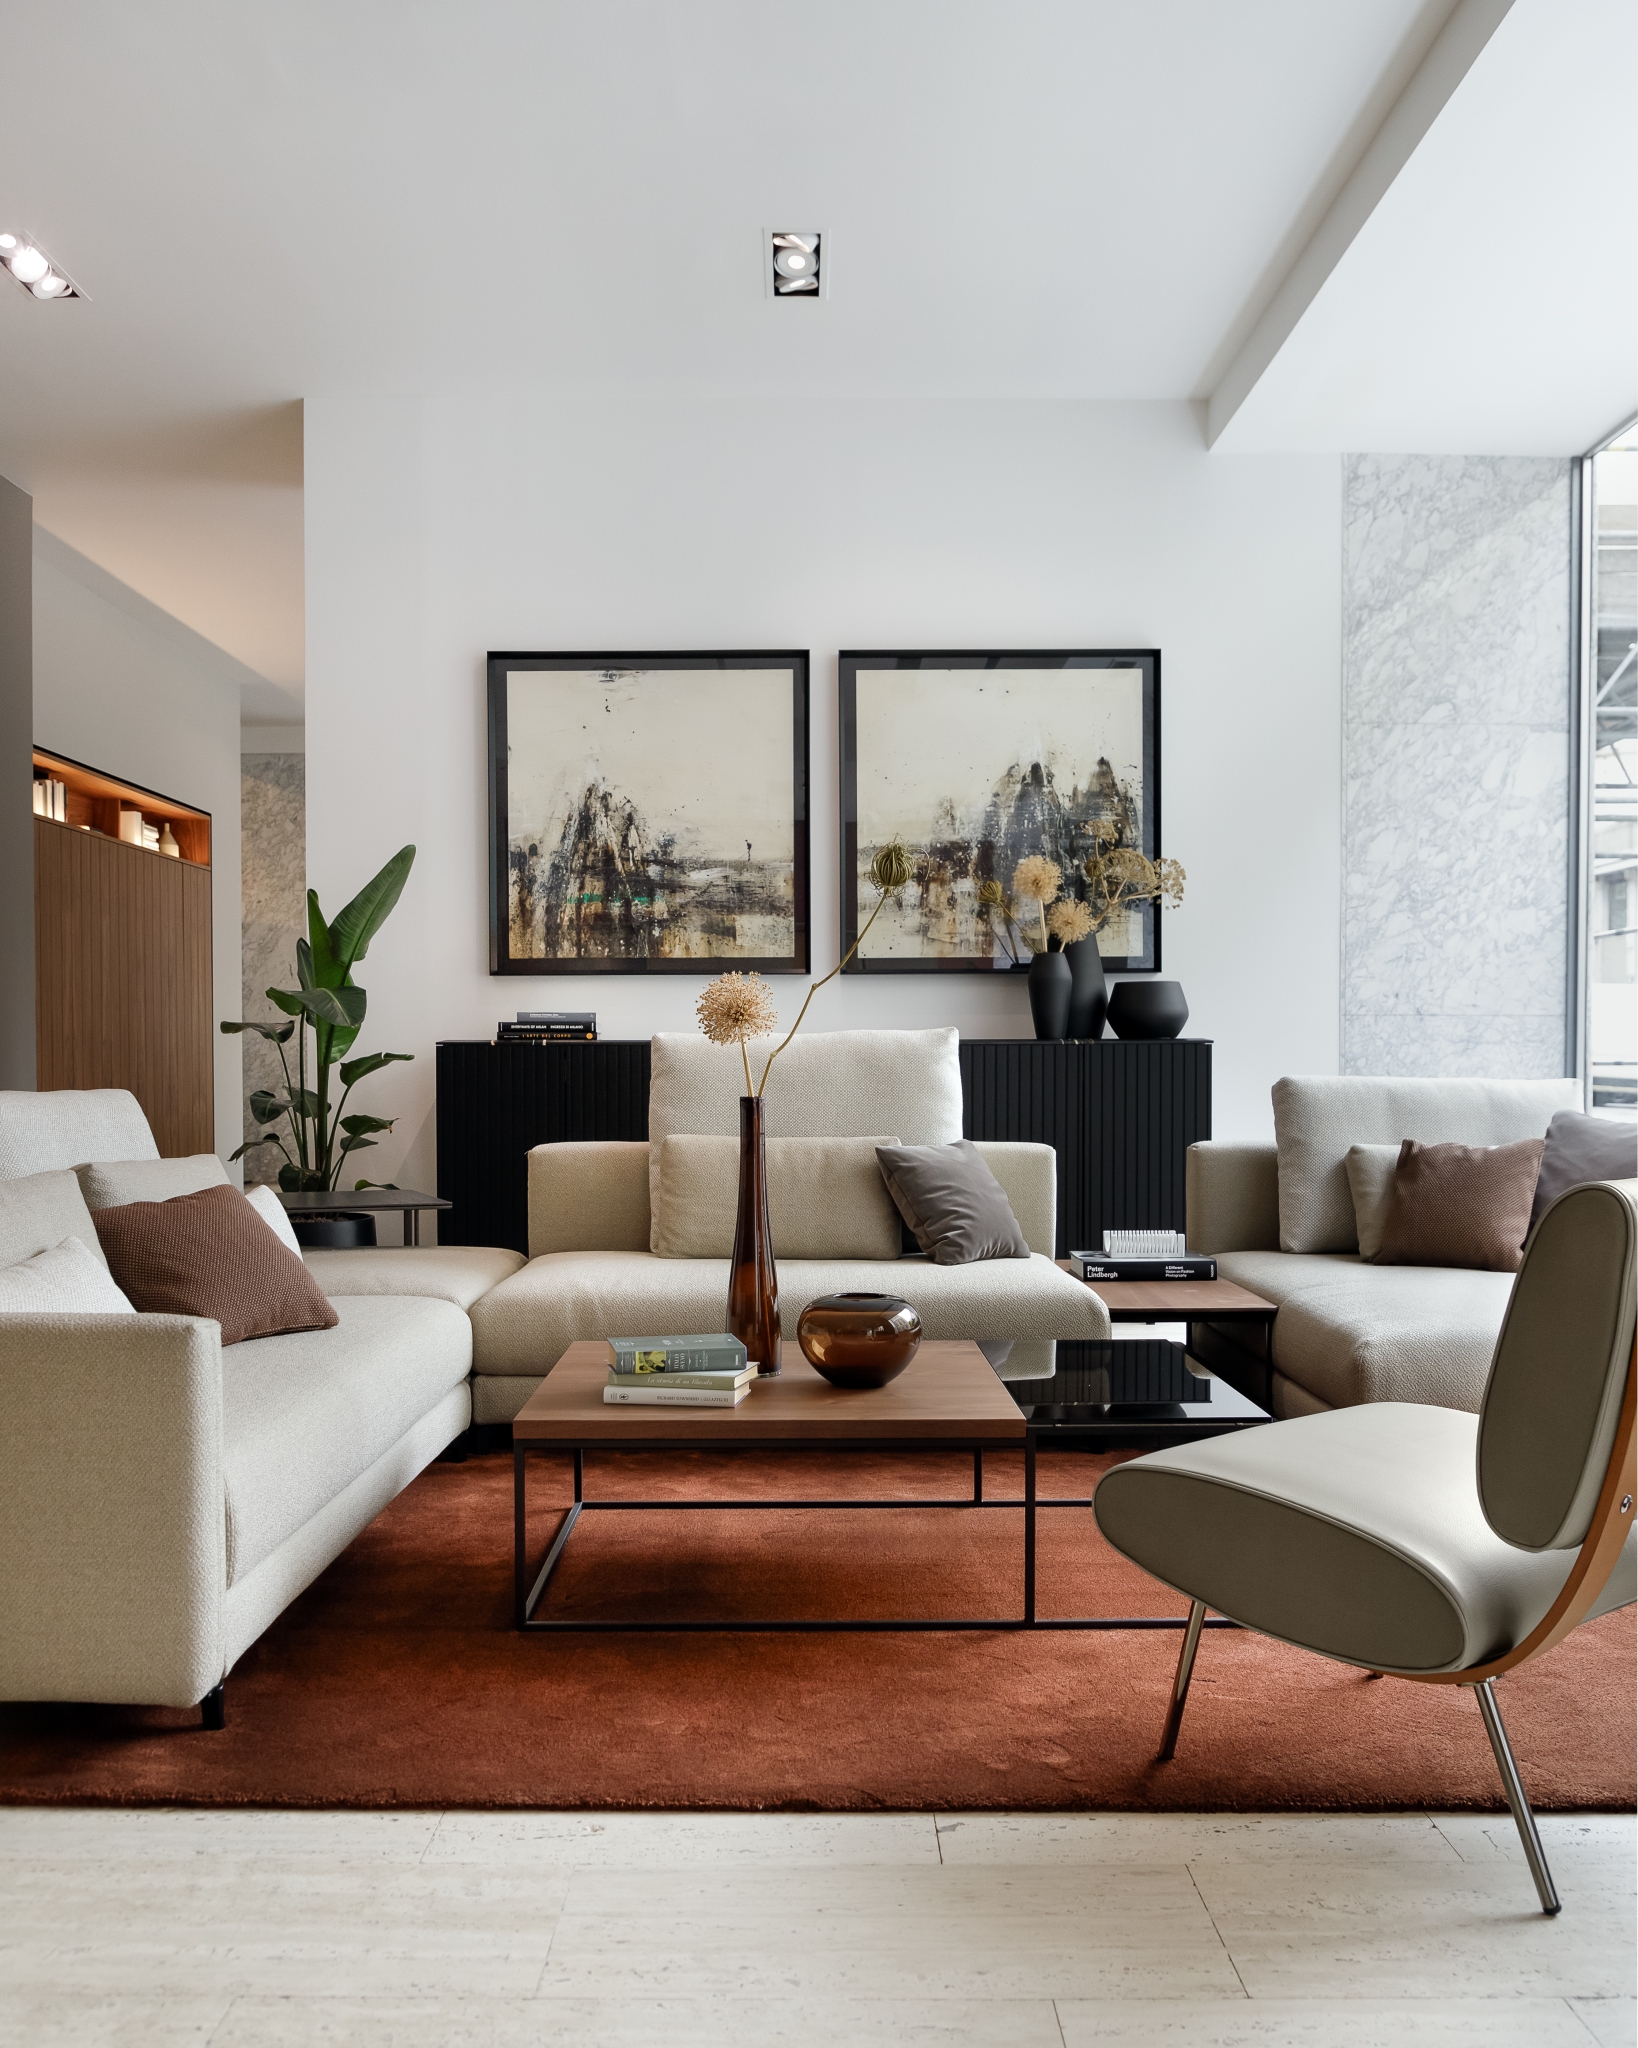 Moderne Wohnzimmereinrichtung mit einem raffinierten neutralen Farbschema, bestehend aus einem weichen Sofagarnitur, einem eleganten Sessel und einem eleganten Couchtisch, ergänzt durch abstrakte Wandkunst und dezente Dekorakzente.